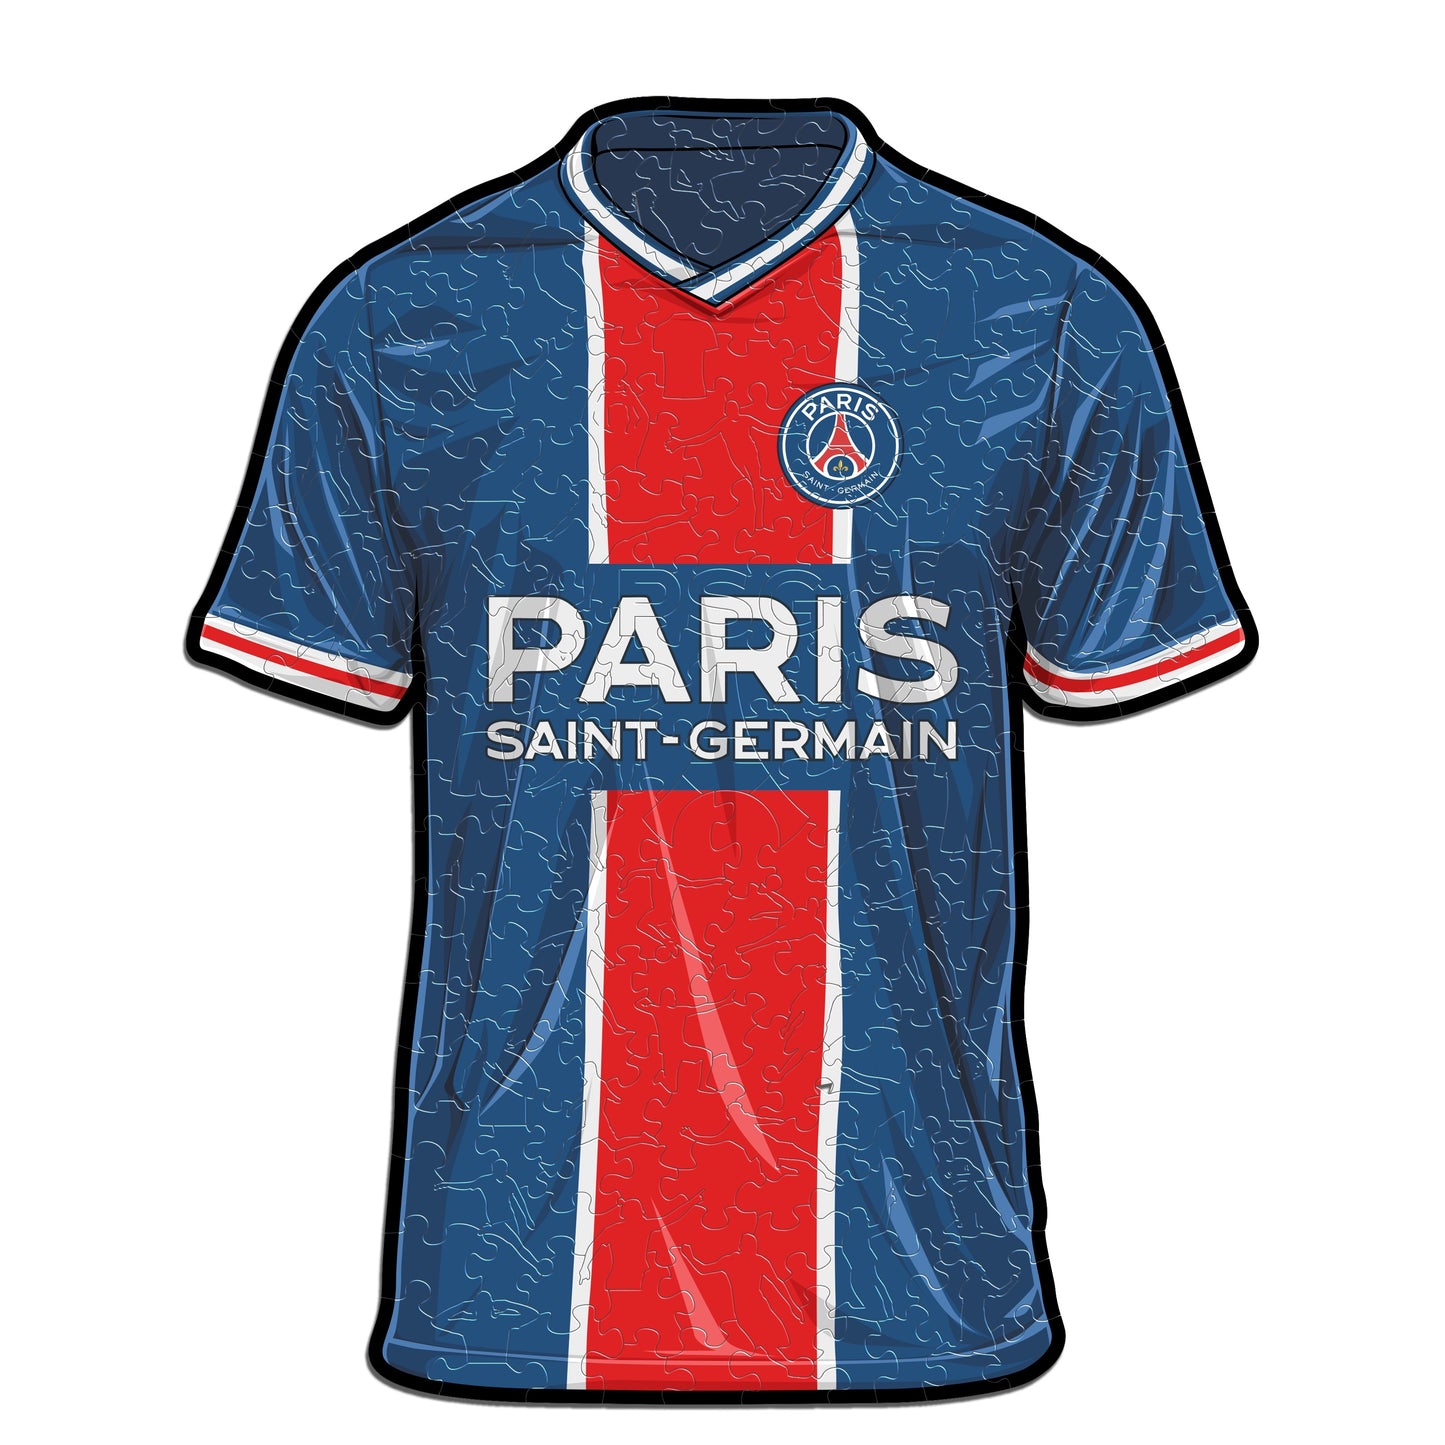 Paris Saint-Germain FC® Jersey - Wooden Puzzle